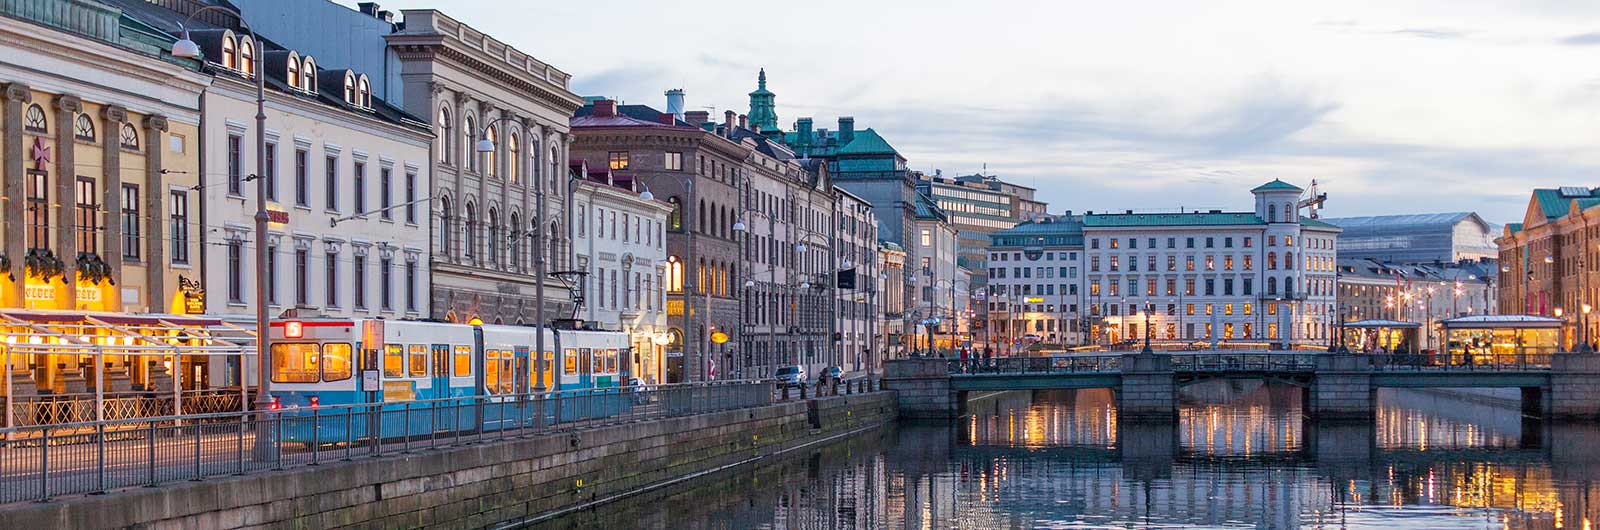 Byggnader och vatten i Göteborg